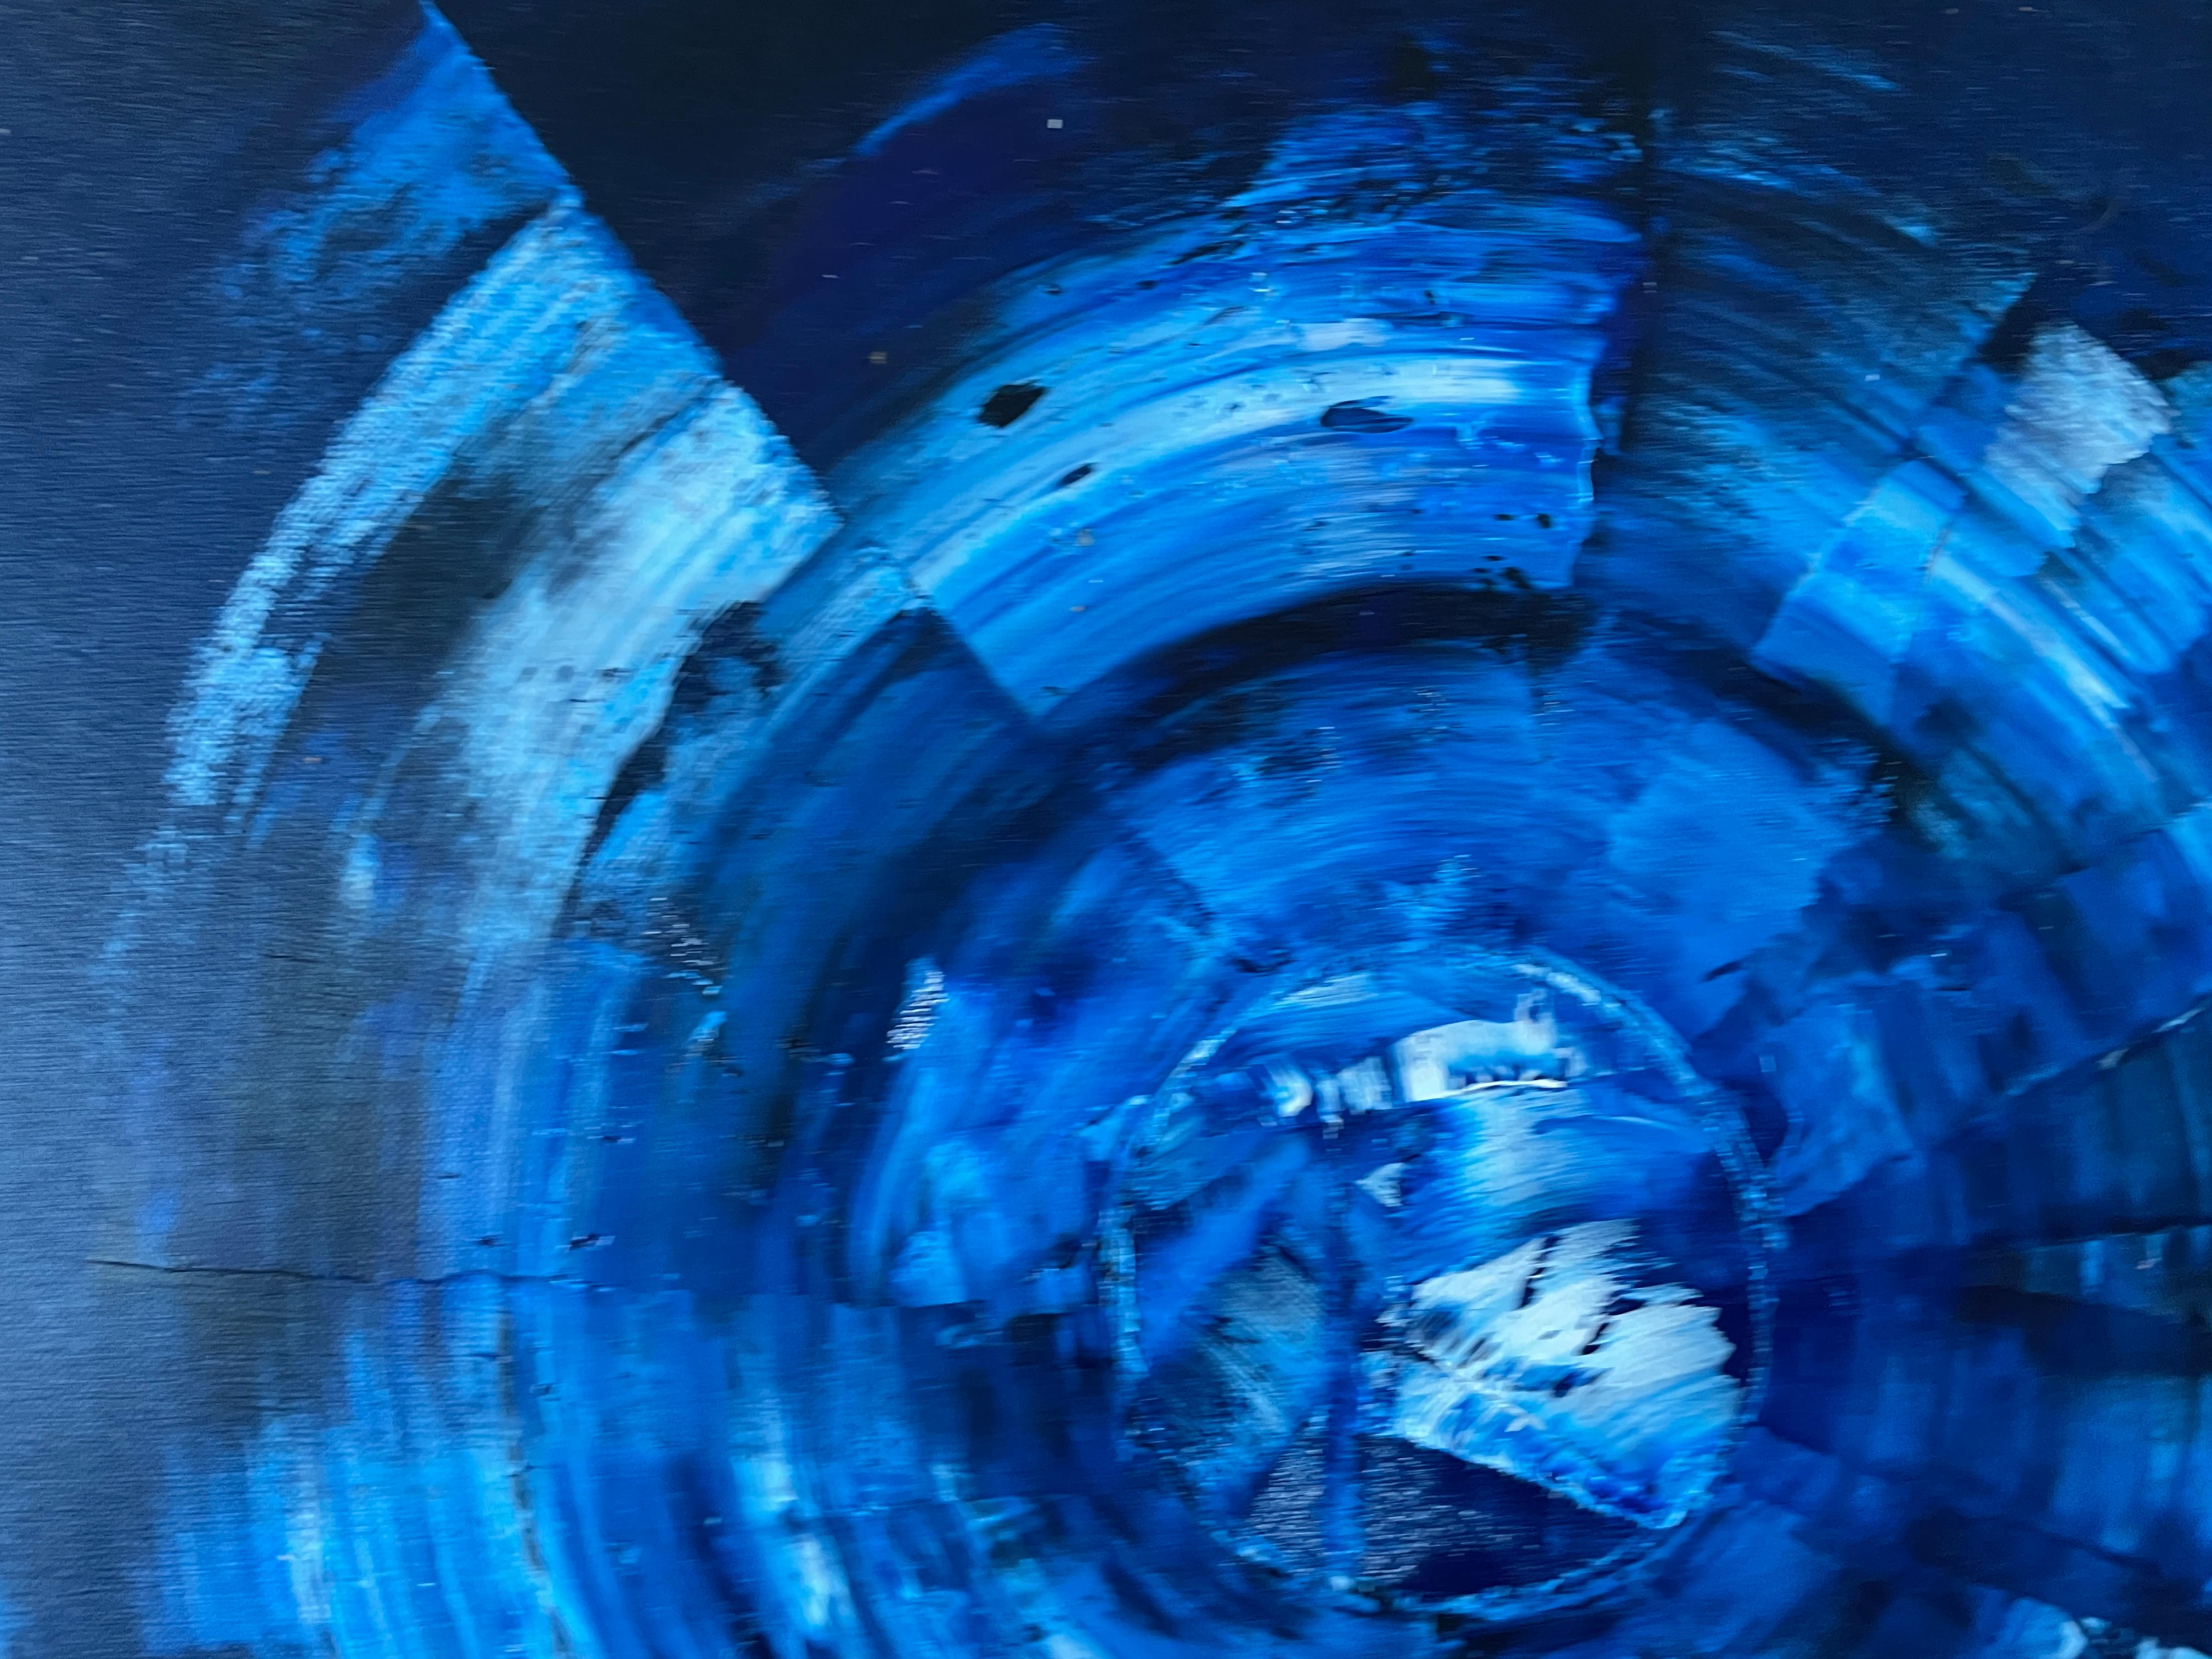 Blau kosmisch 05

Blau ist die dominierende Farbe in der Komposition. Es ist ein tiefes Blau, das in die Weite und den endlosen Himmel einer späten Verzweiflung gehüllt ist. Dieser Ton zieht sich durch alle Glieder und bildet die Grundlage, auf der